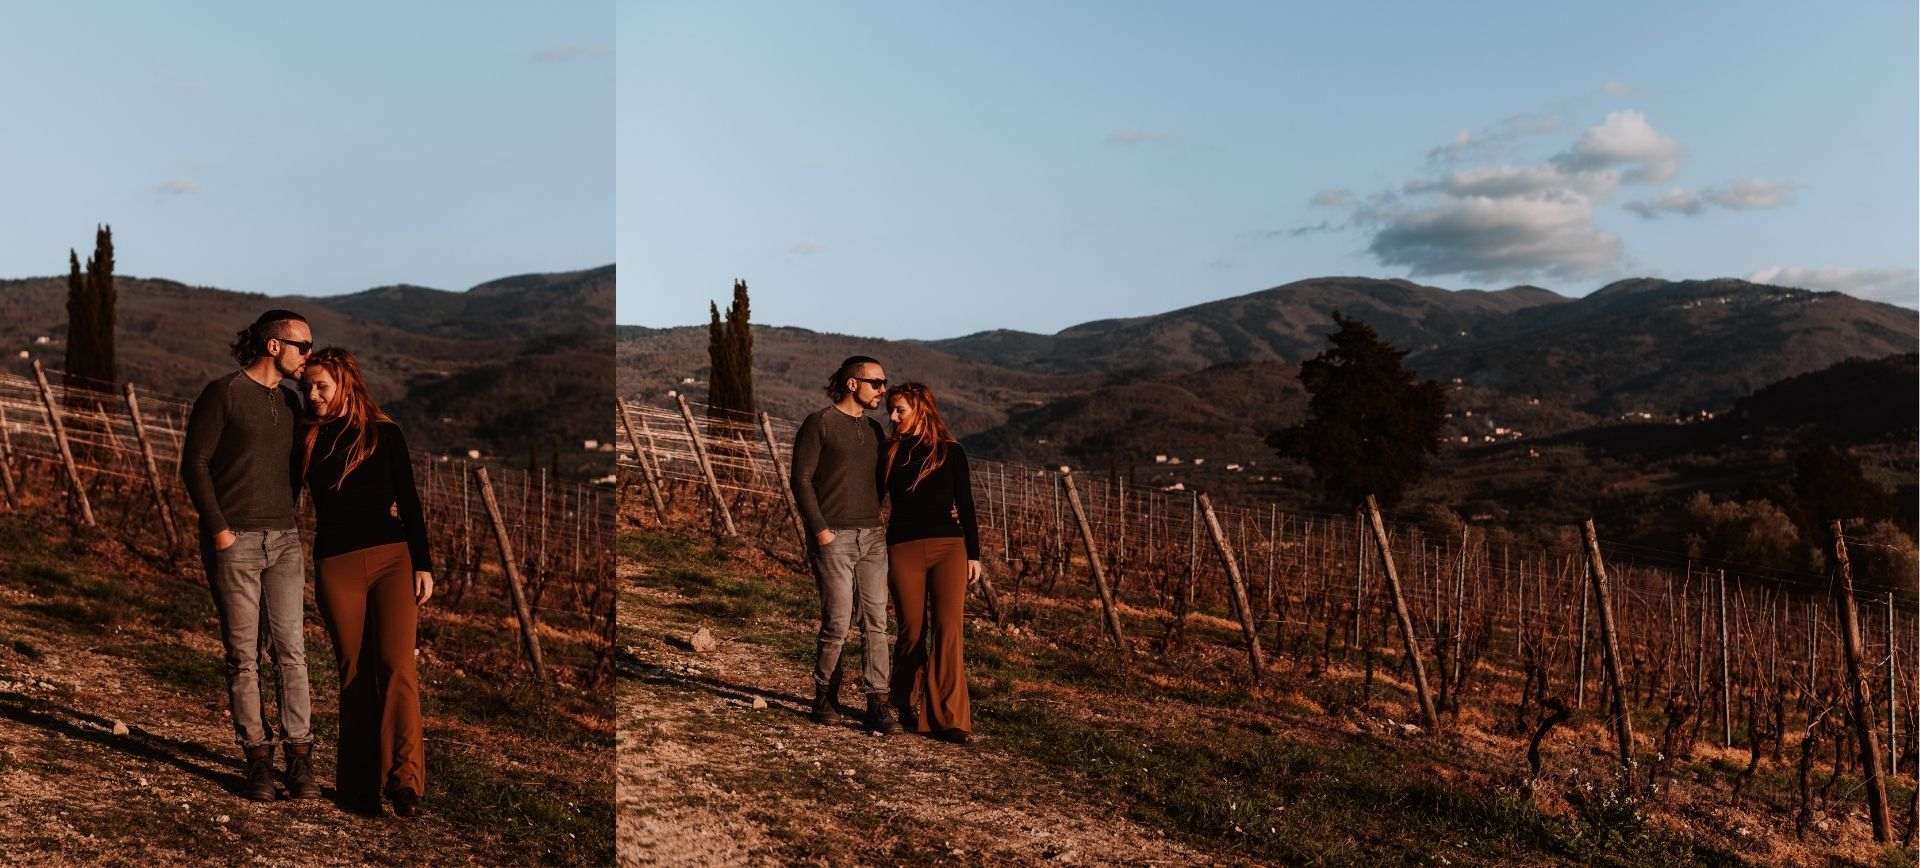 vineyard photoshoot near florence, tuscany